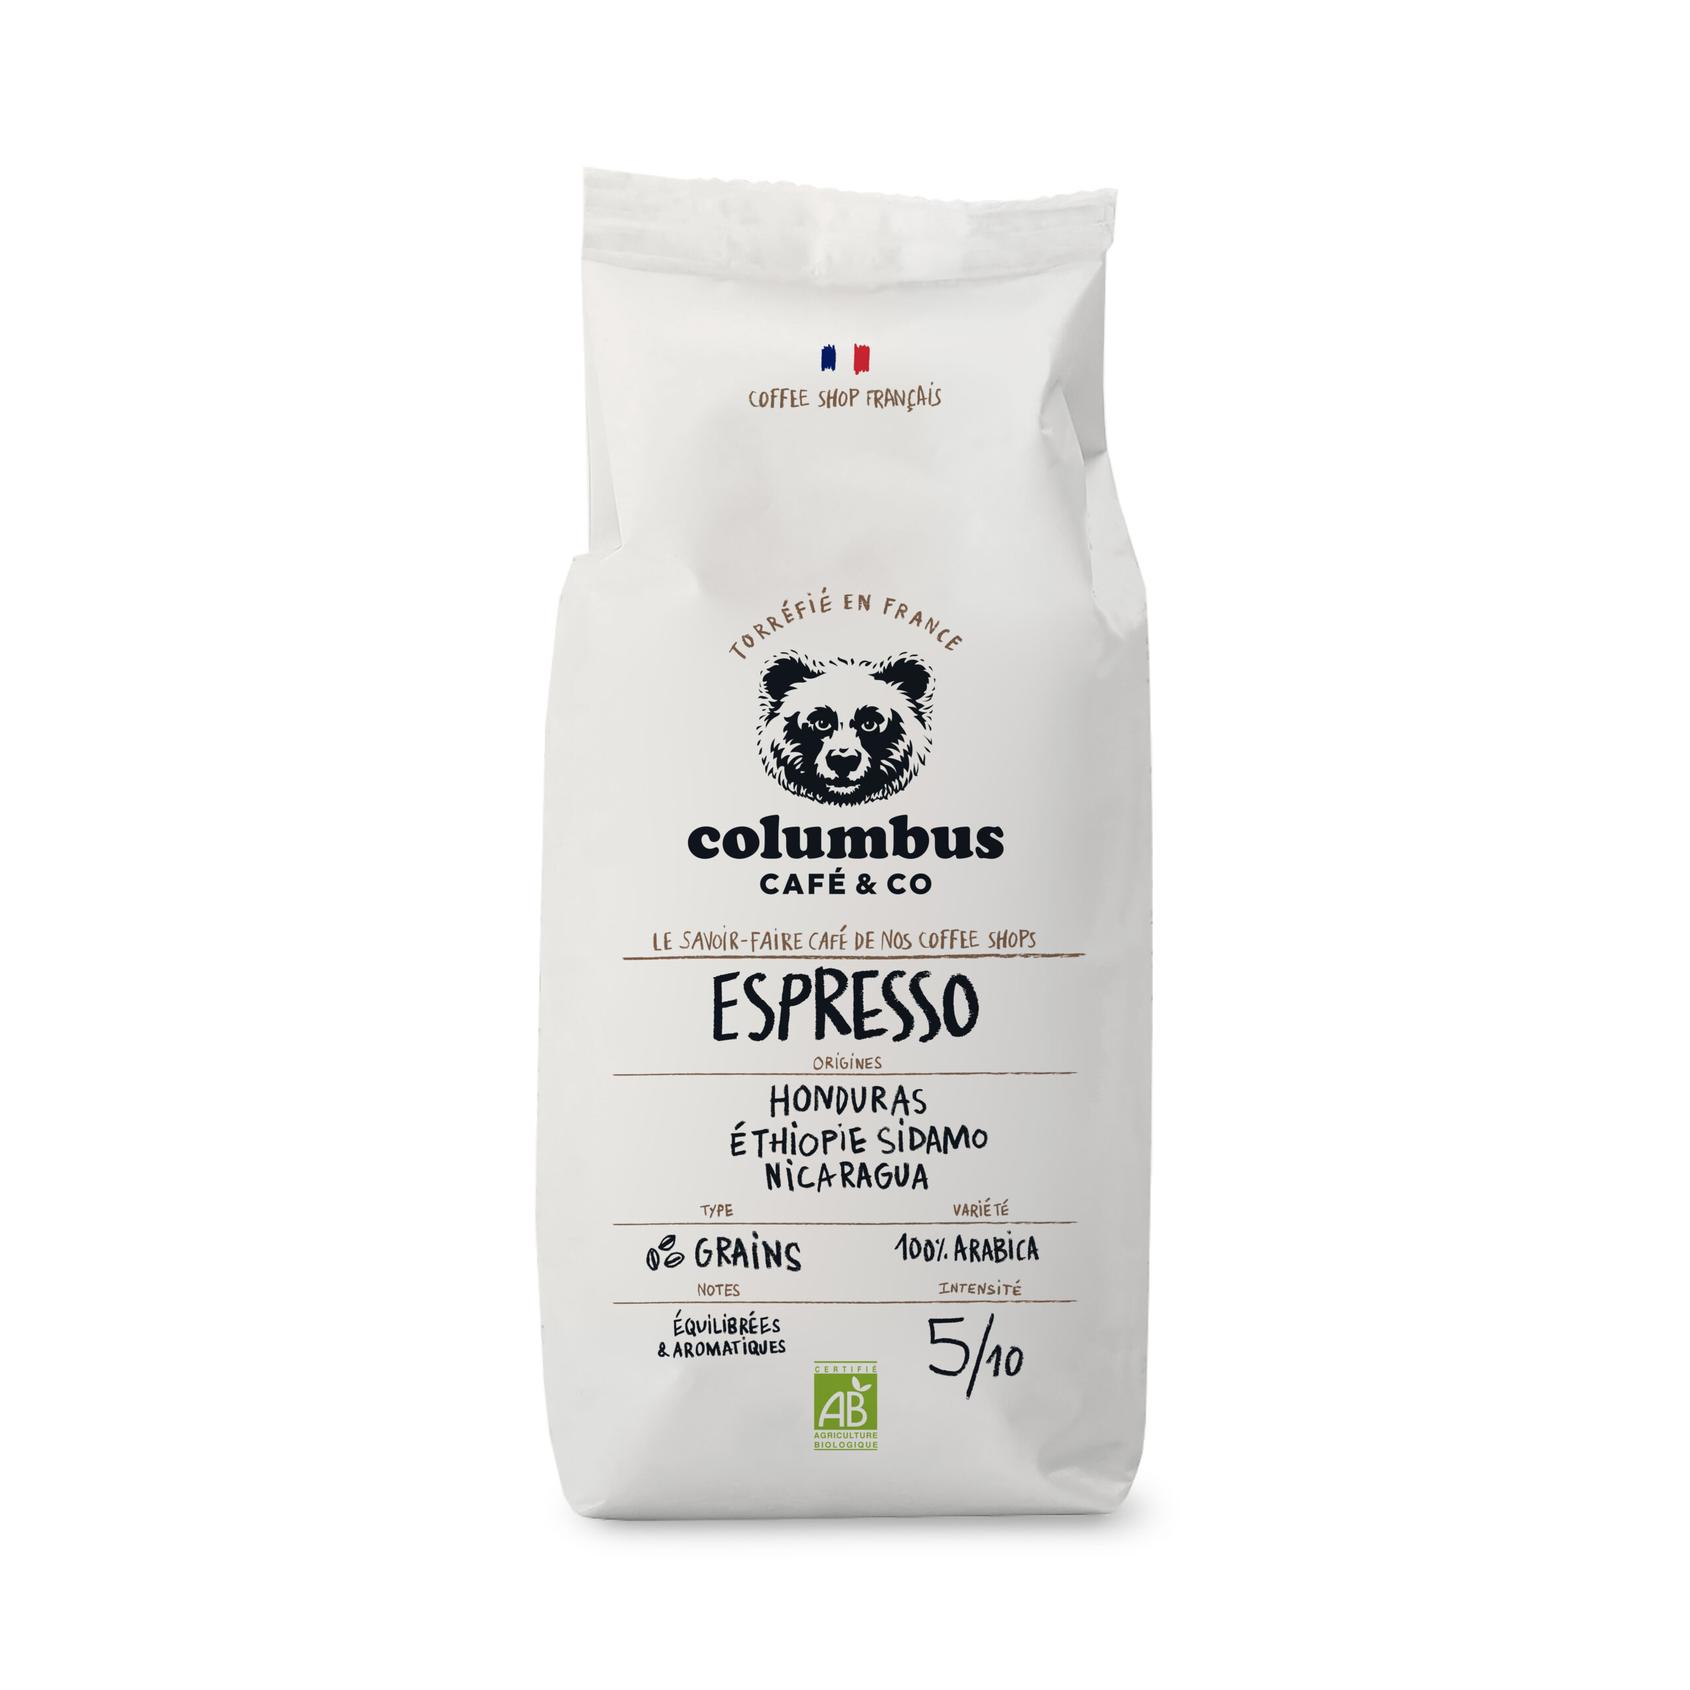 Café Grain - Espresso Barista Blend 1 KG offre à 23,1€ sur Columbus Café